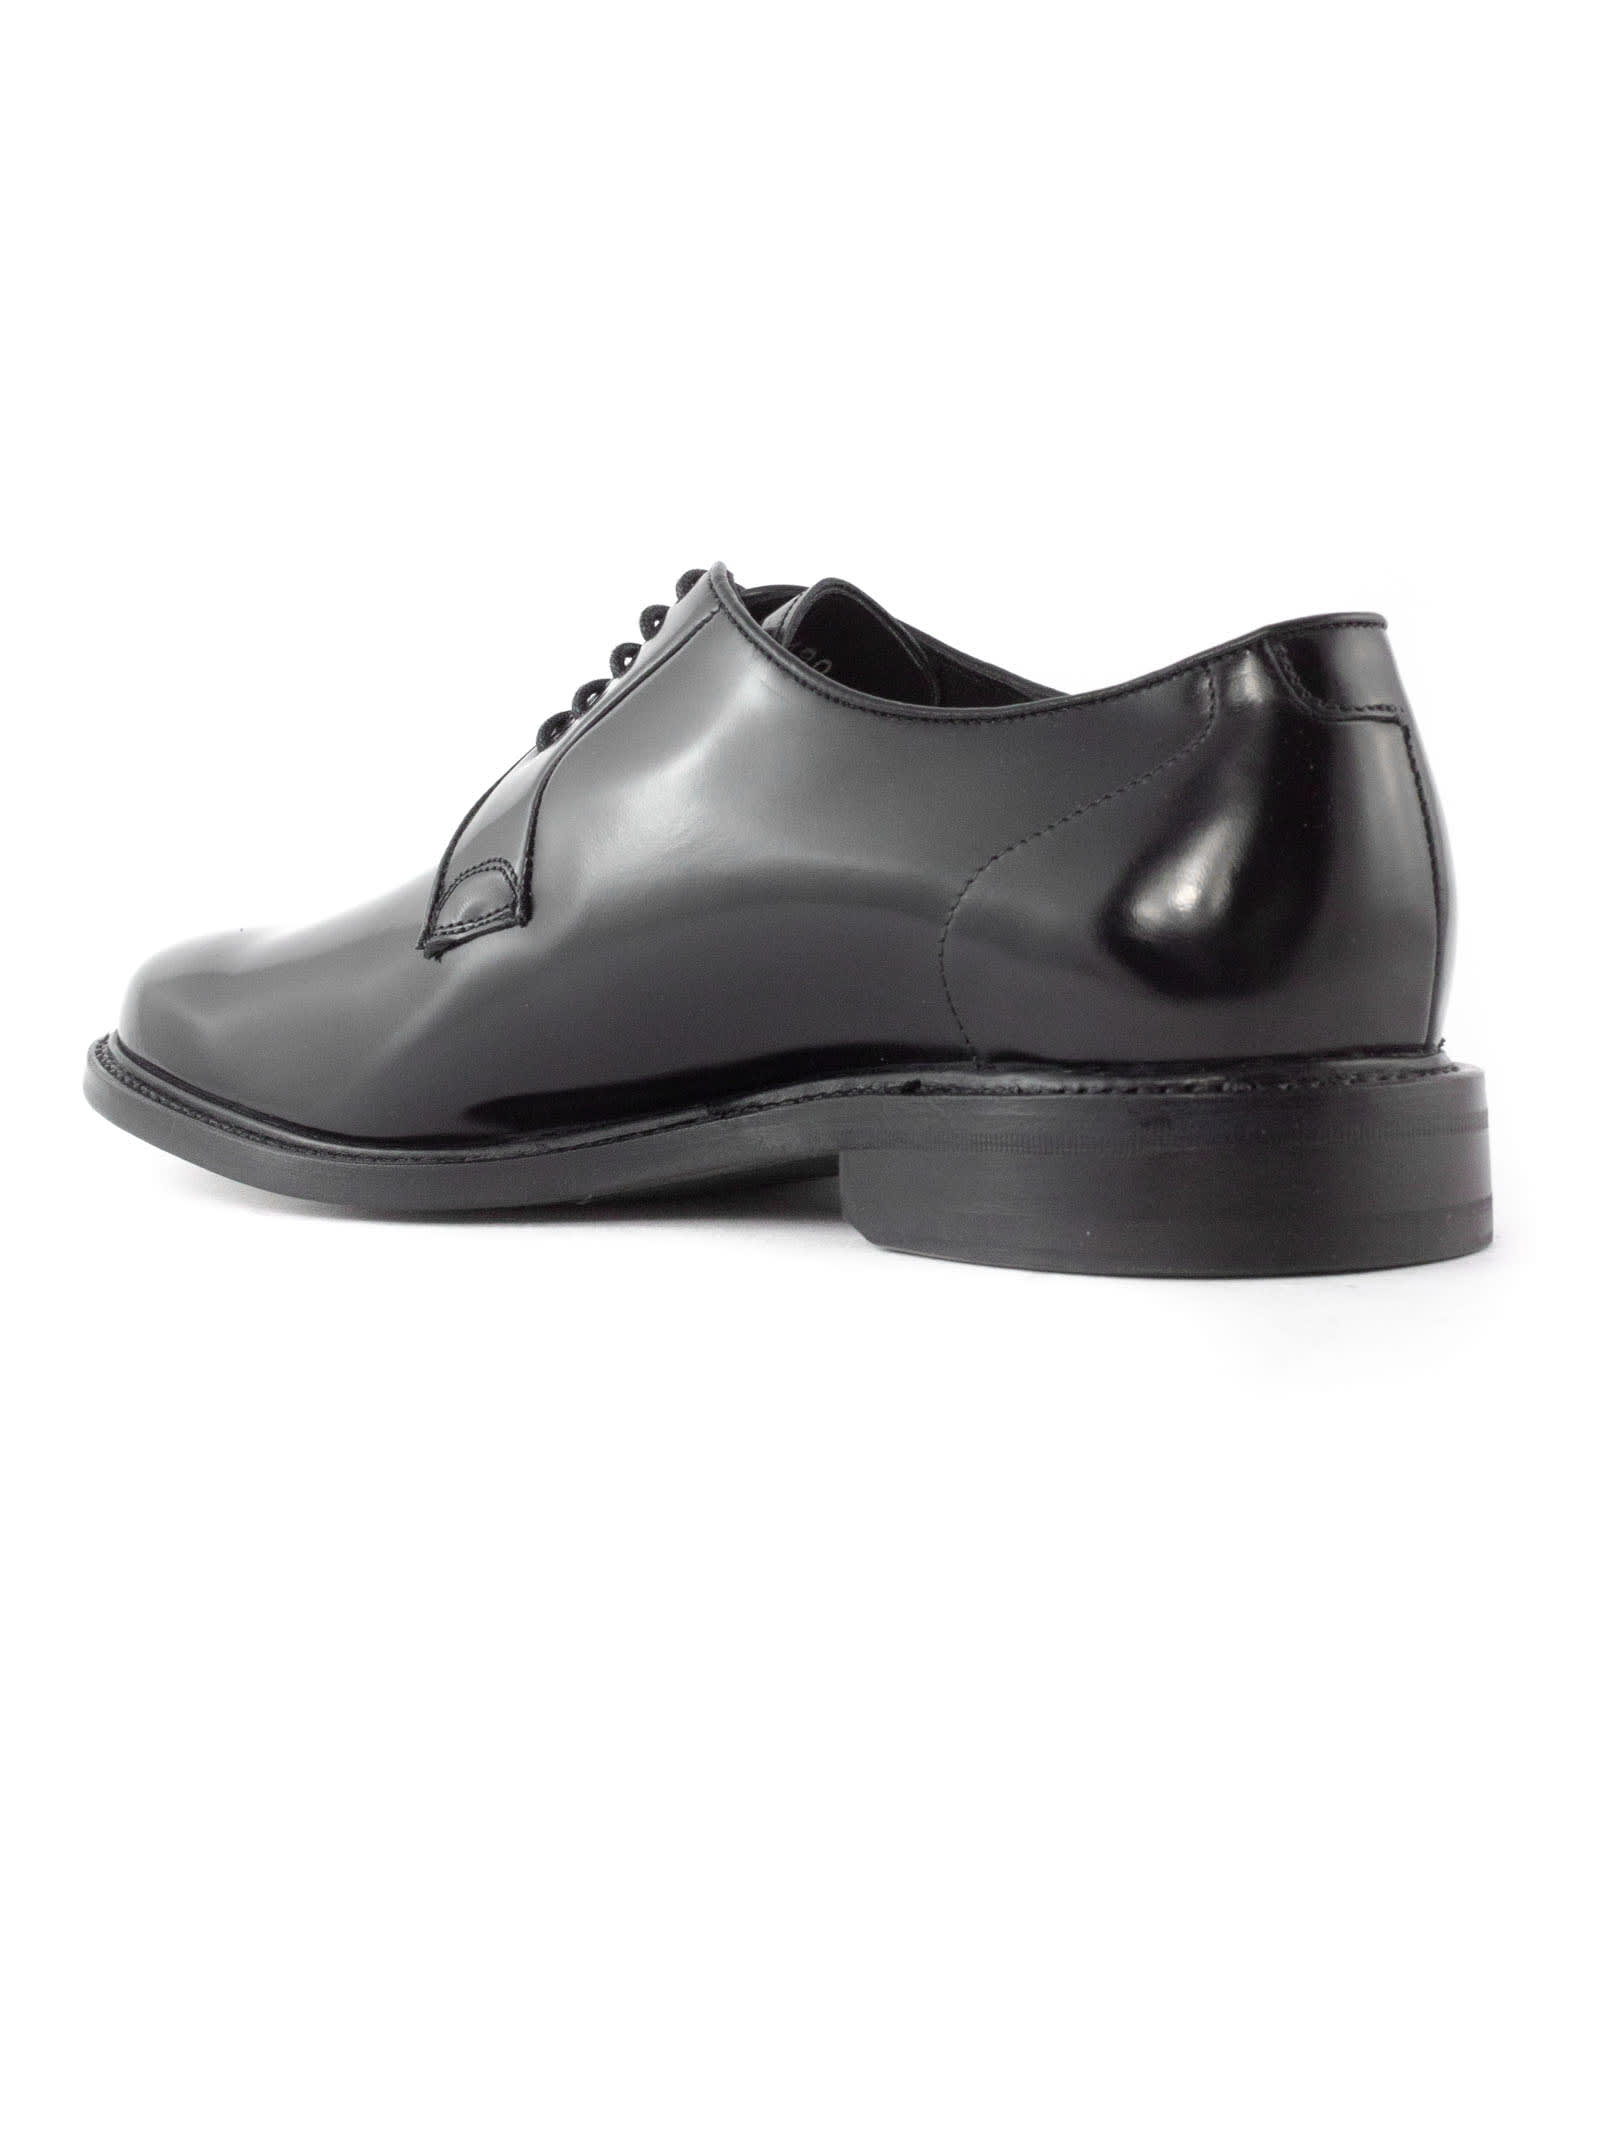 Shop Berwick 1707 Black Patent Leather Derby Shoes